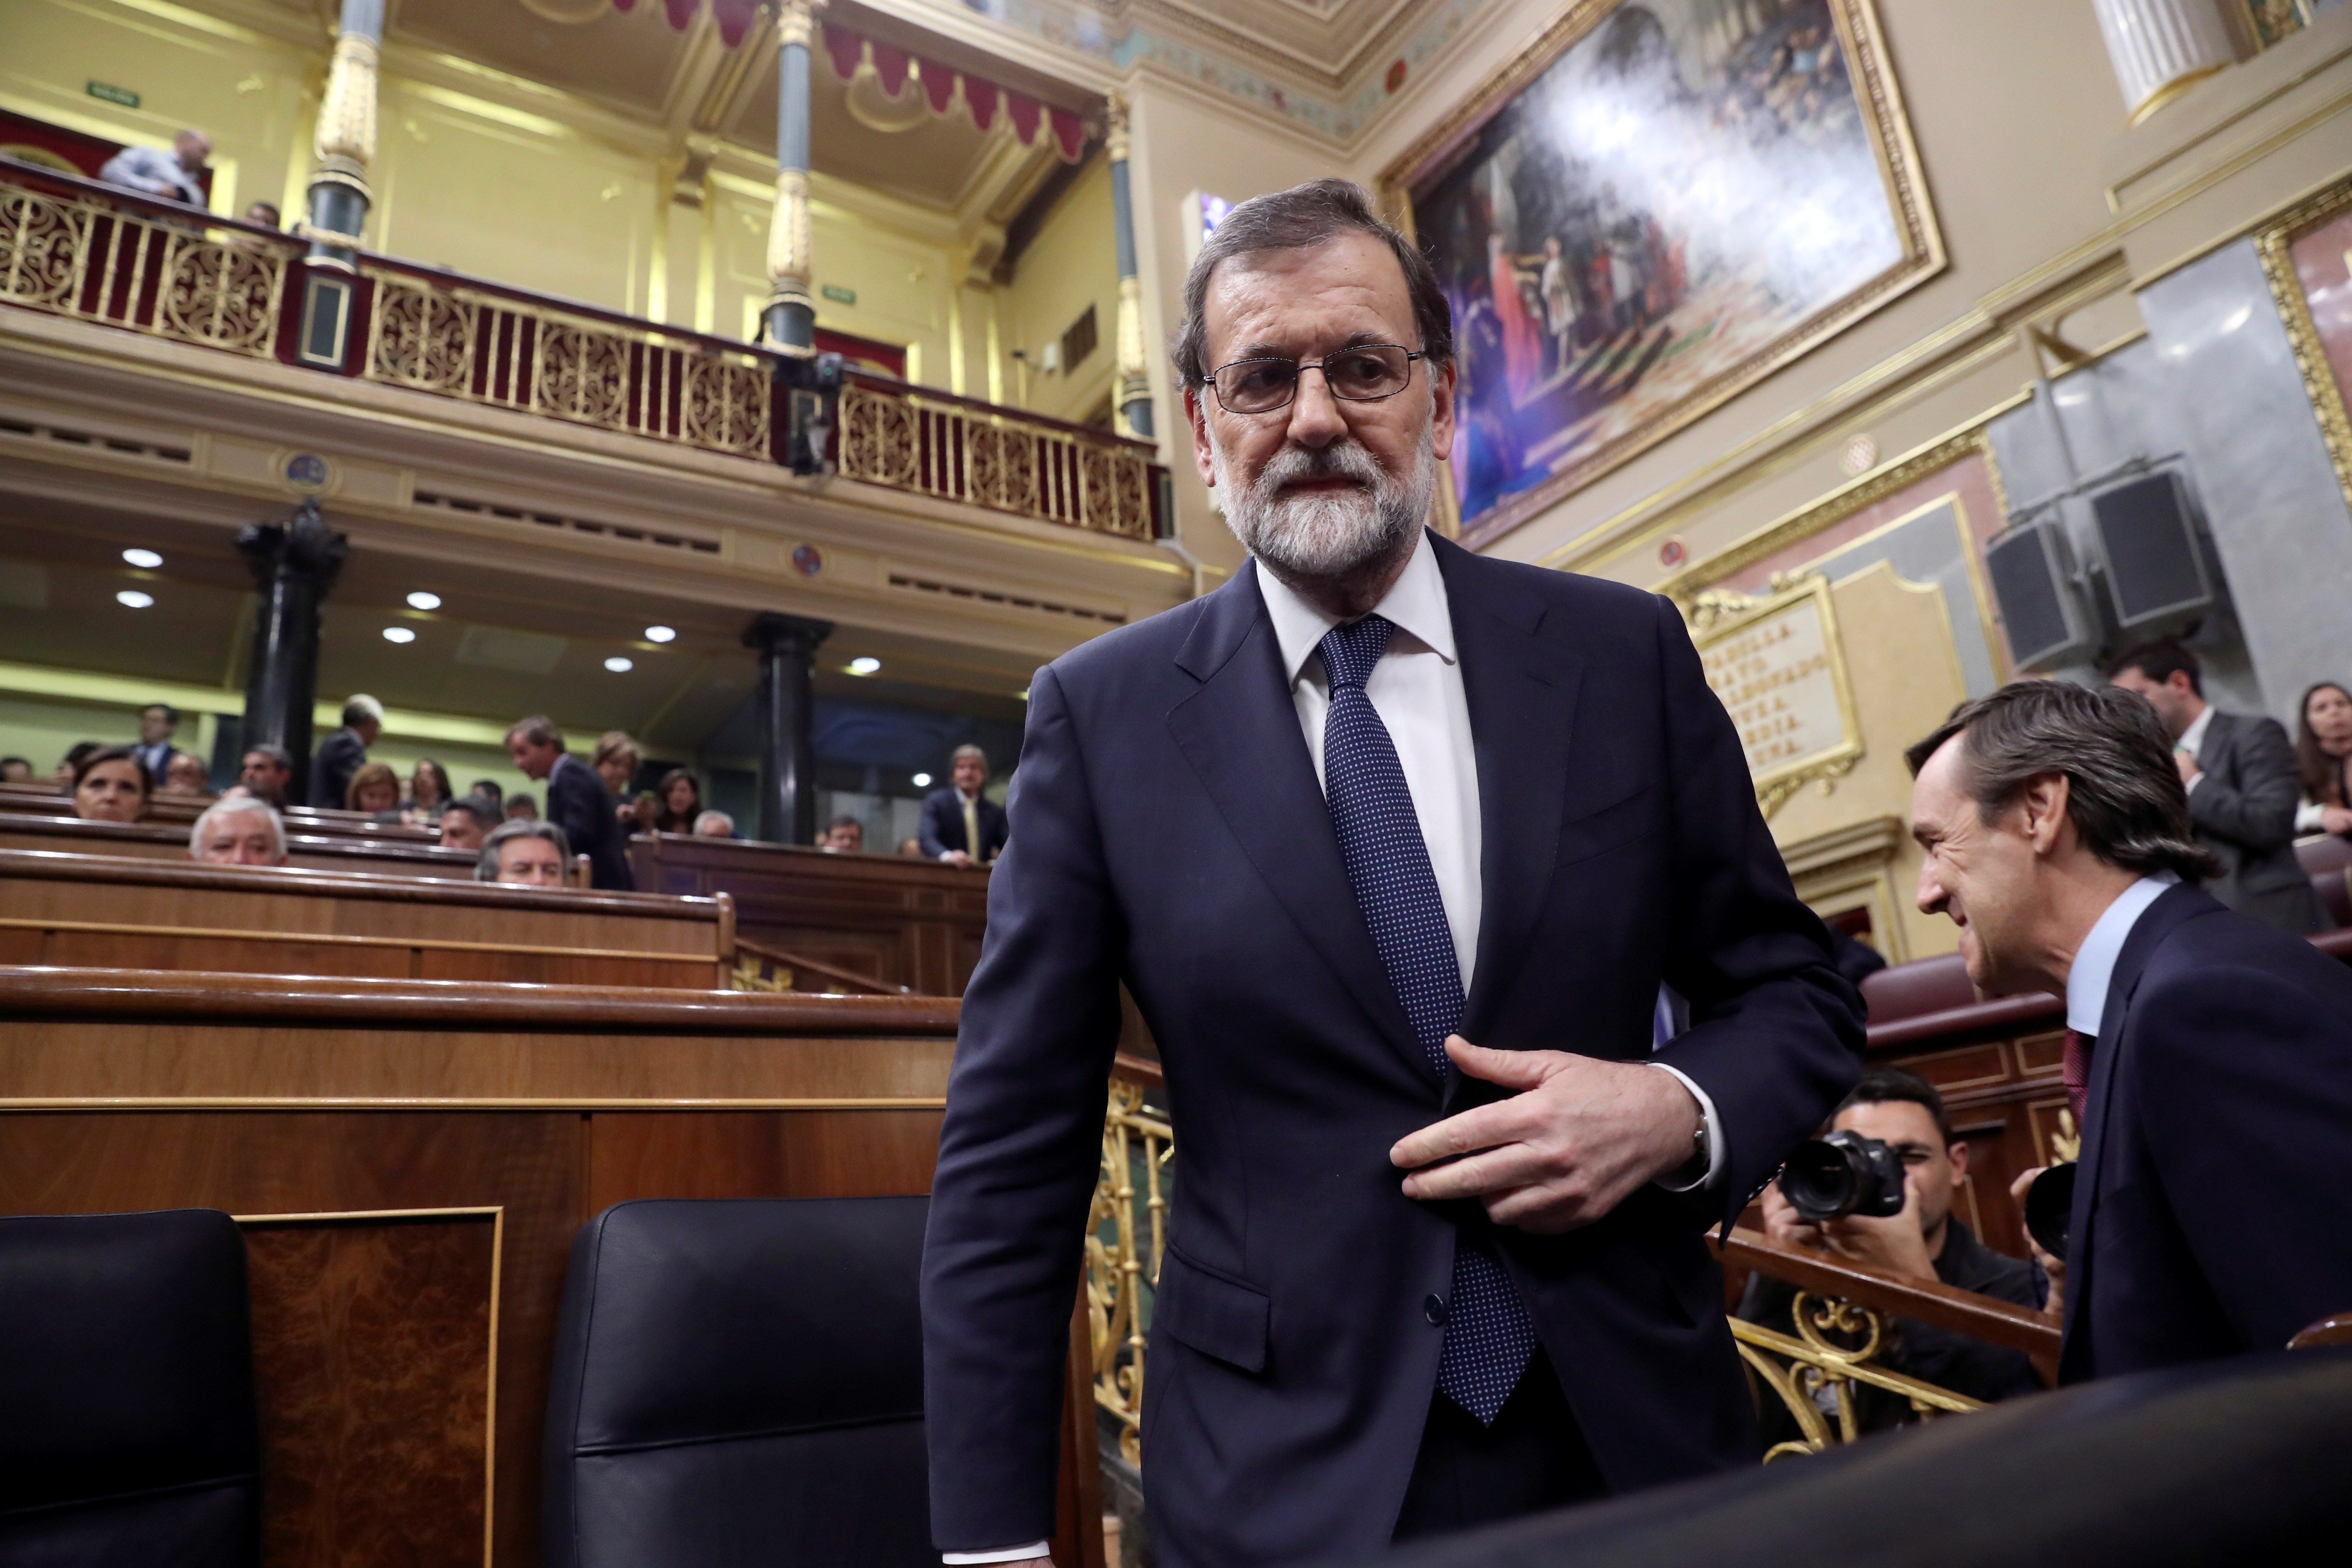 Rajoy tanca la porta a Puigdemont: "No hi ha mediació possible entre la llei i la desobediència"